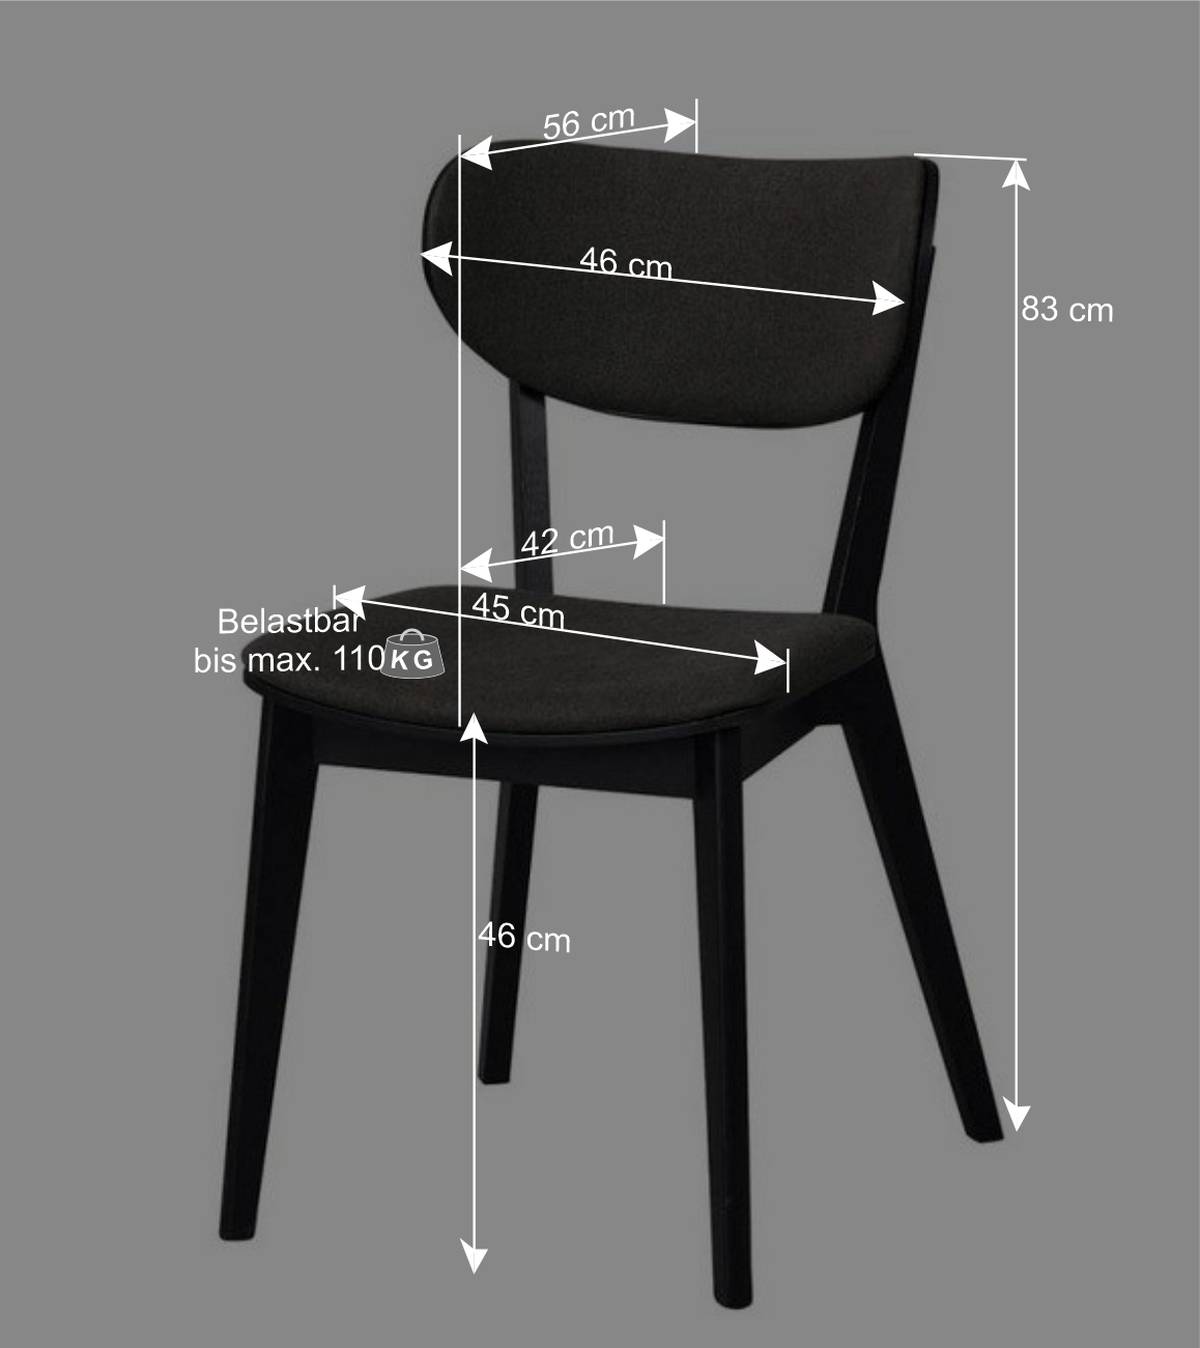 Dunkle Stühle Anjal mit Holz und Webstoff (2er Set)